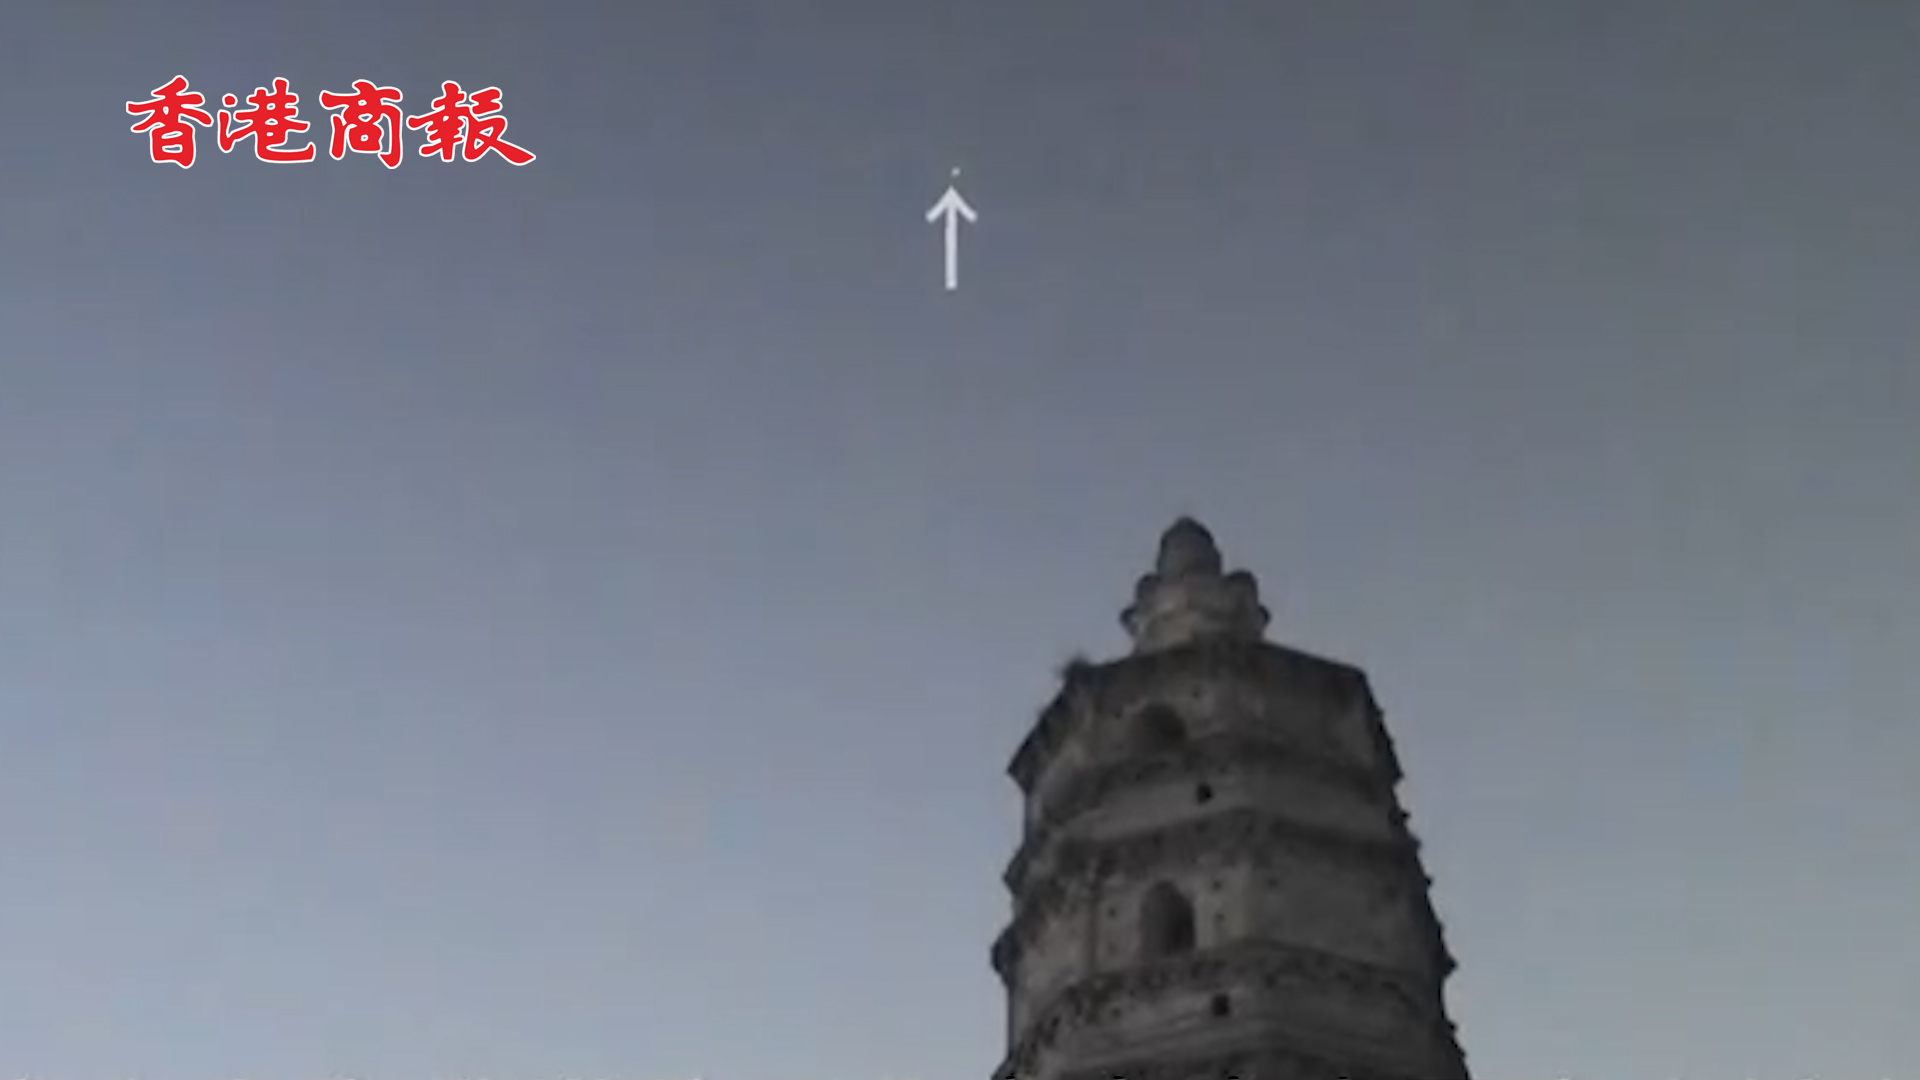 有片丨中國空間站飛越北京古塔 這個同框跨越近千年